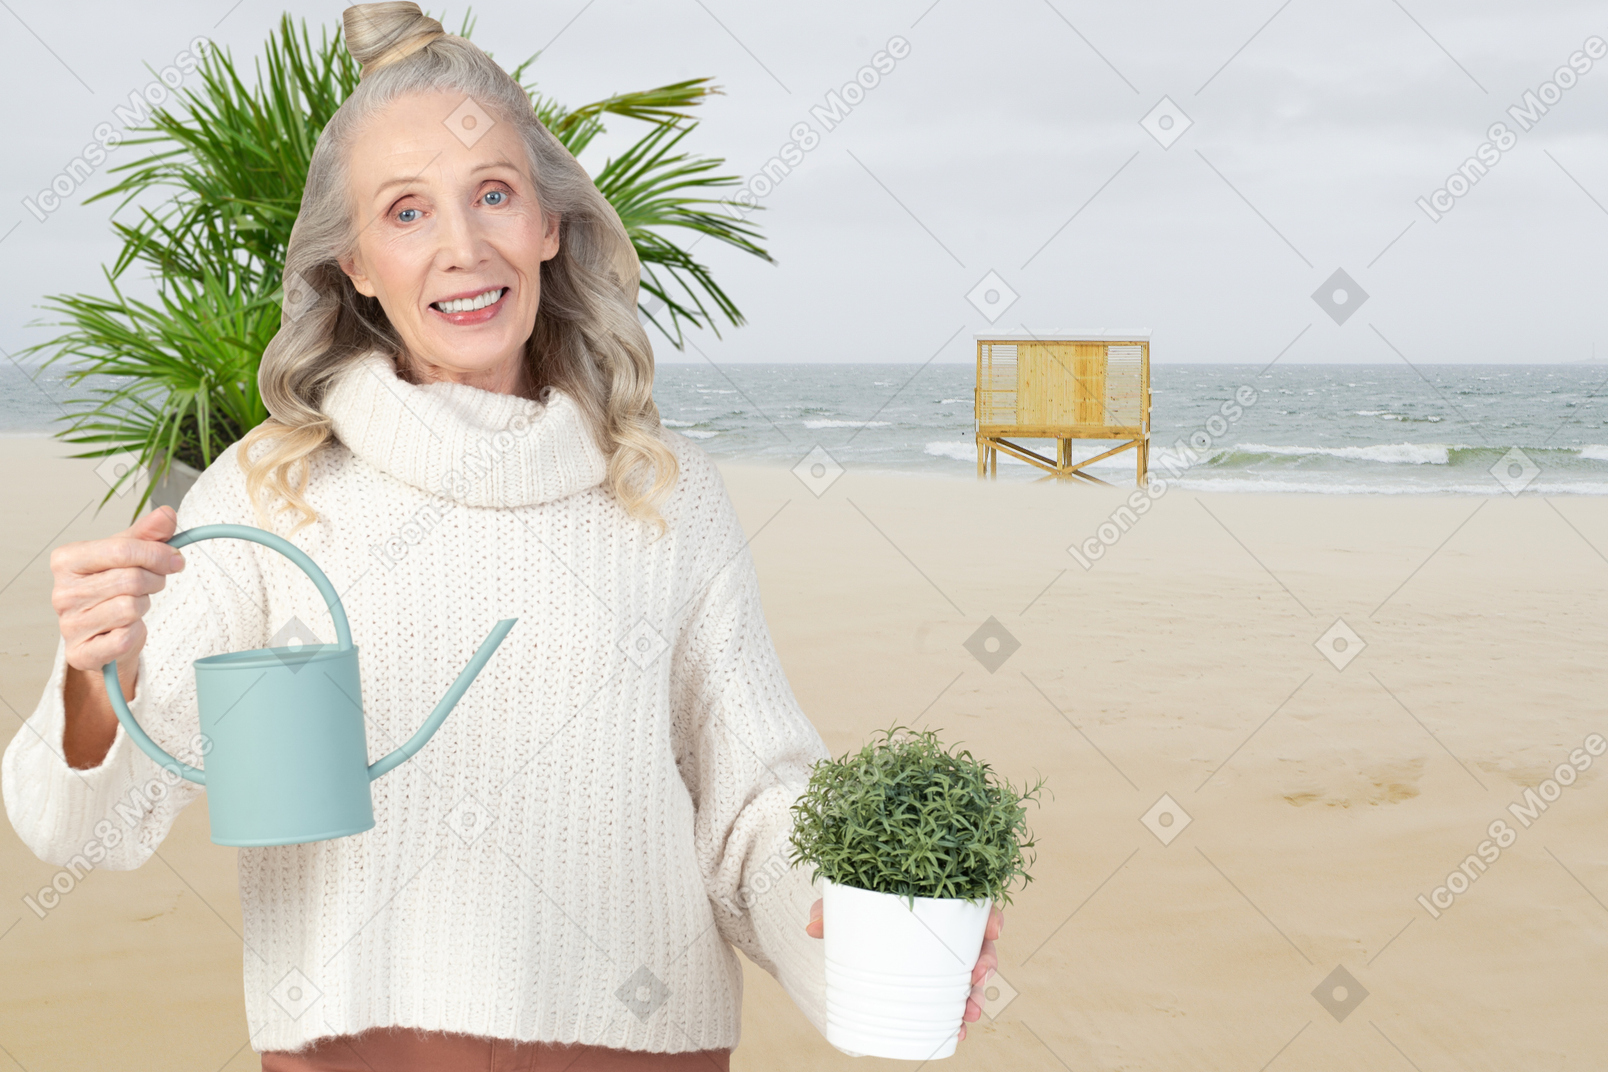 ビーチの背景に水まき缶と鉢植えを保持している年配の女性